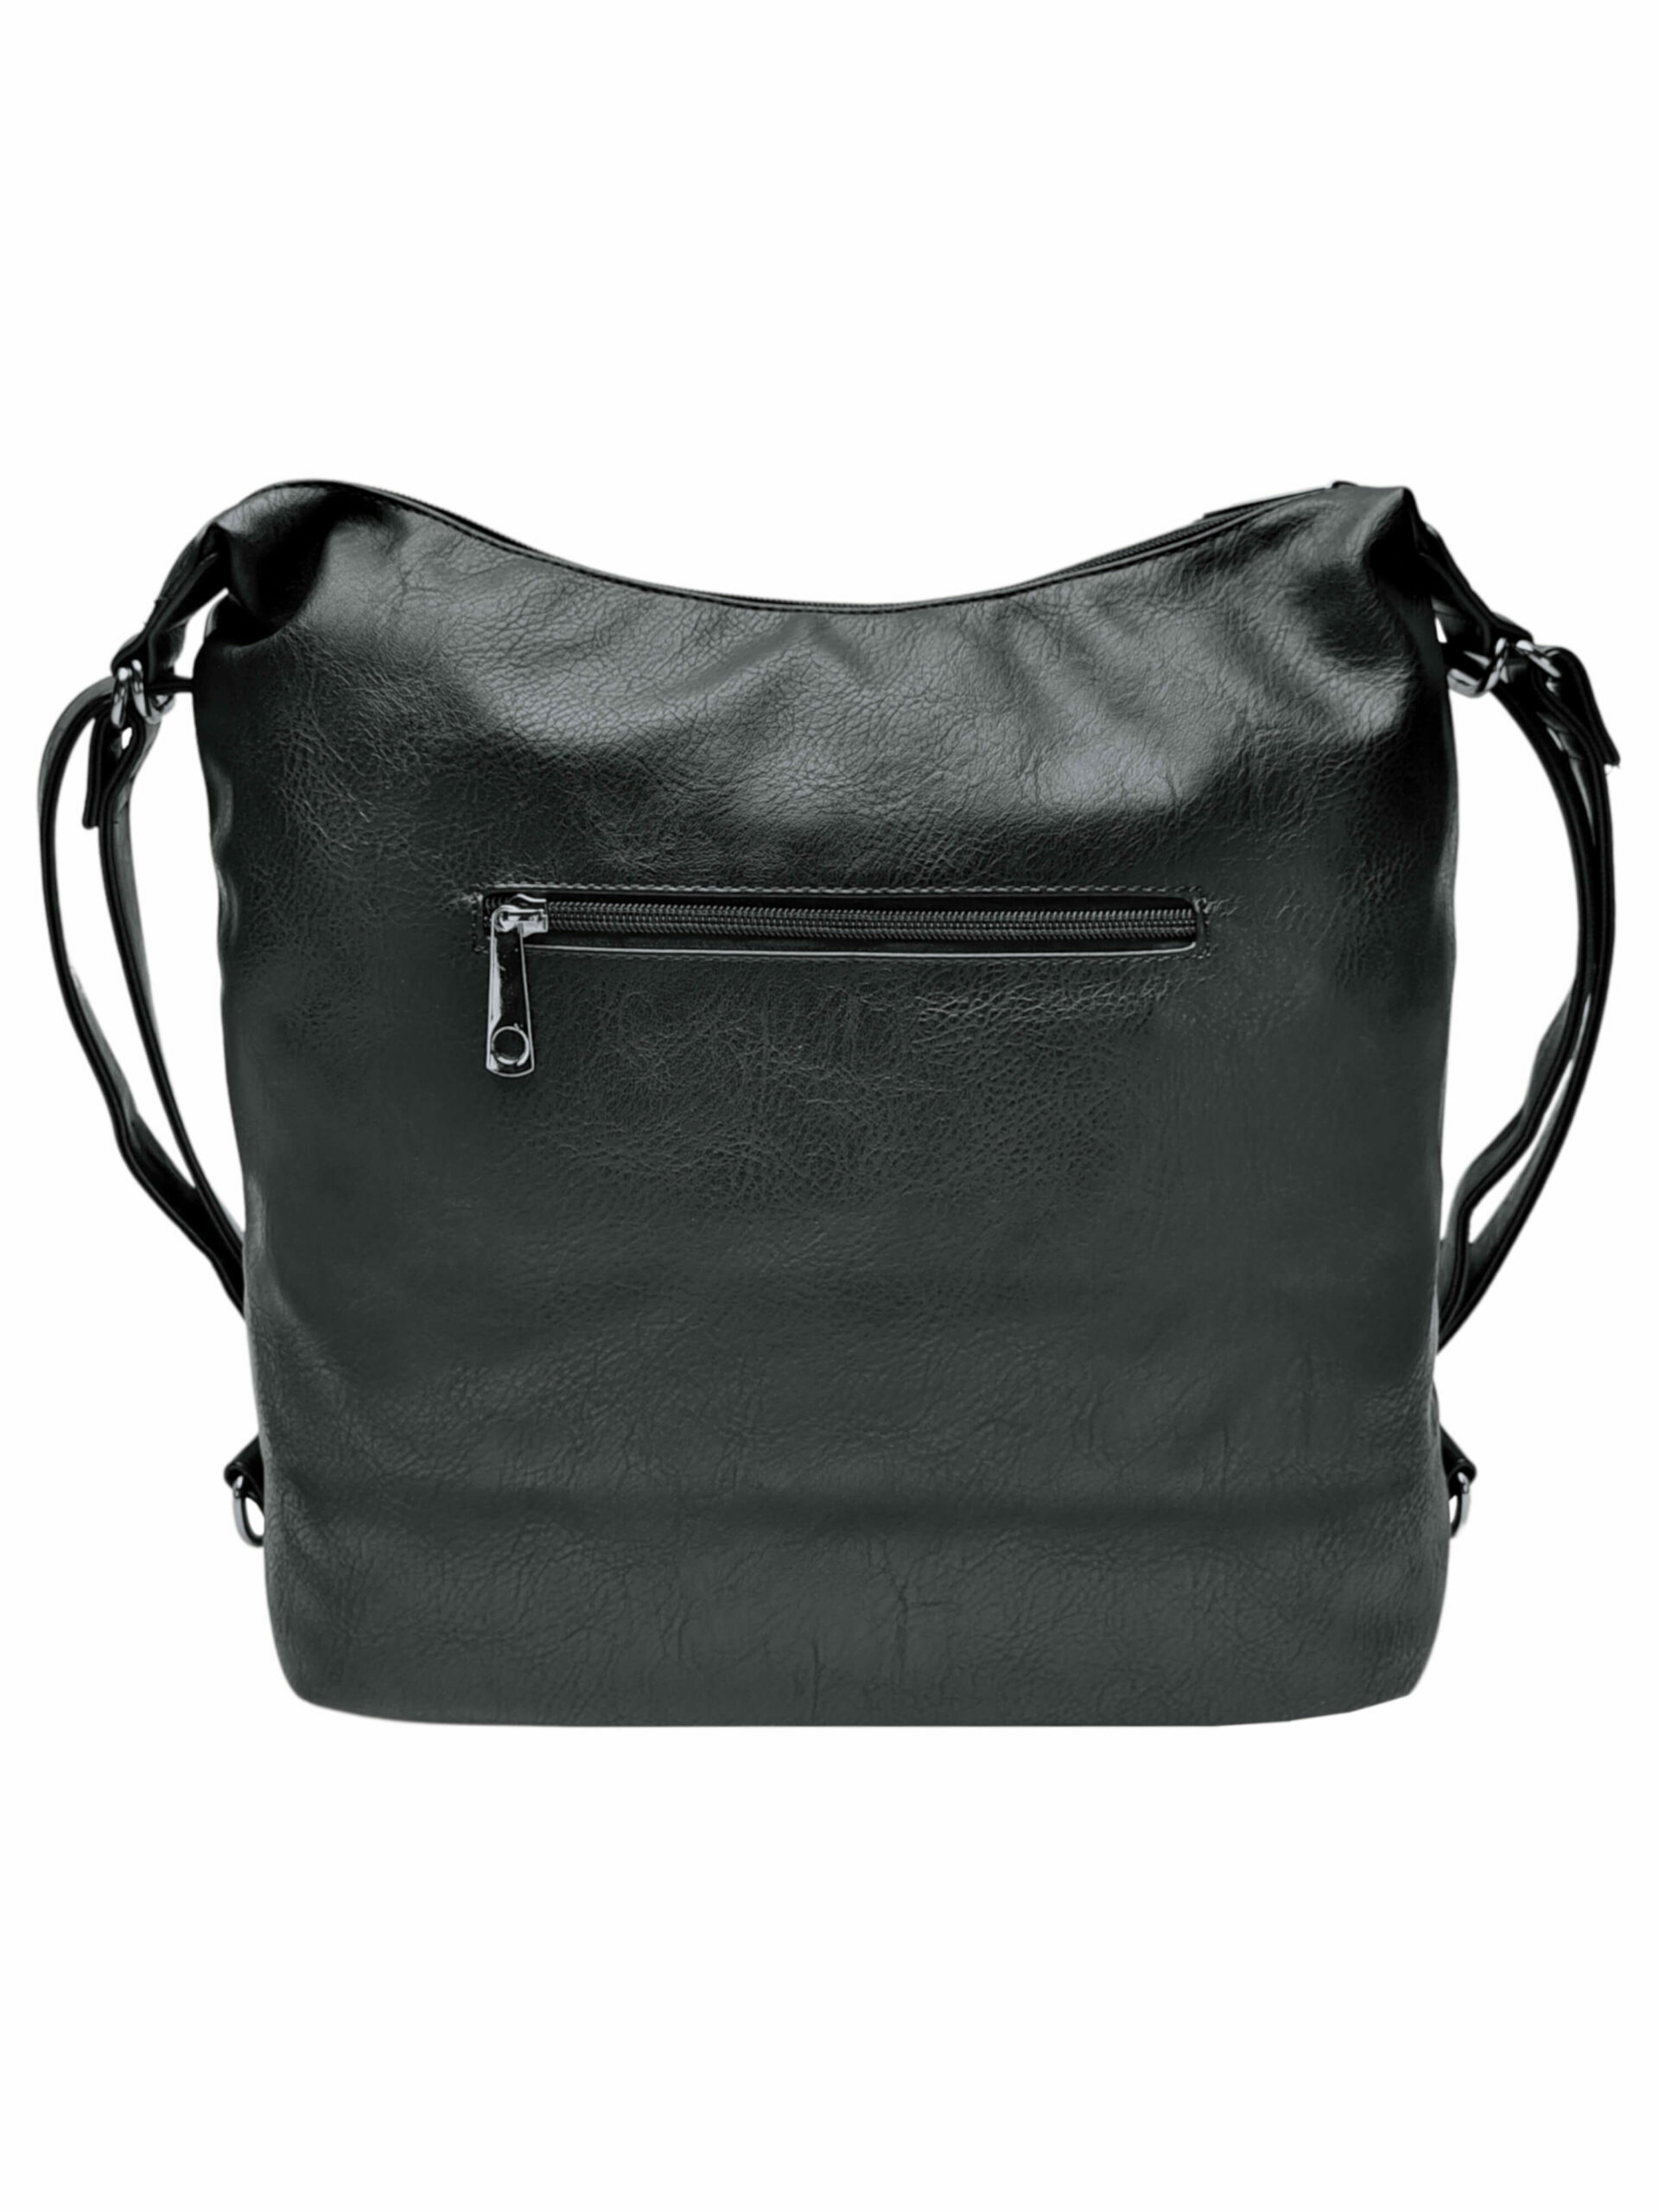 Velký černý kabelko-batoh z eko kůže, Tapple, H18076, zadní strana kabelko-batohu